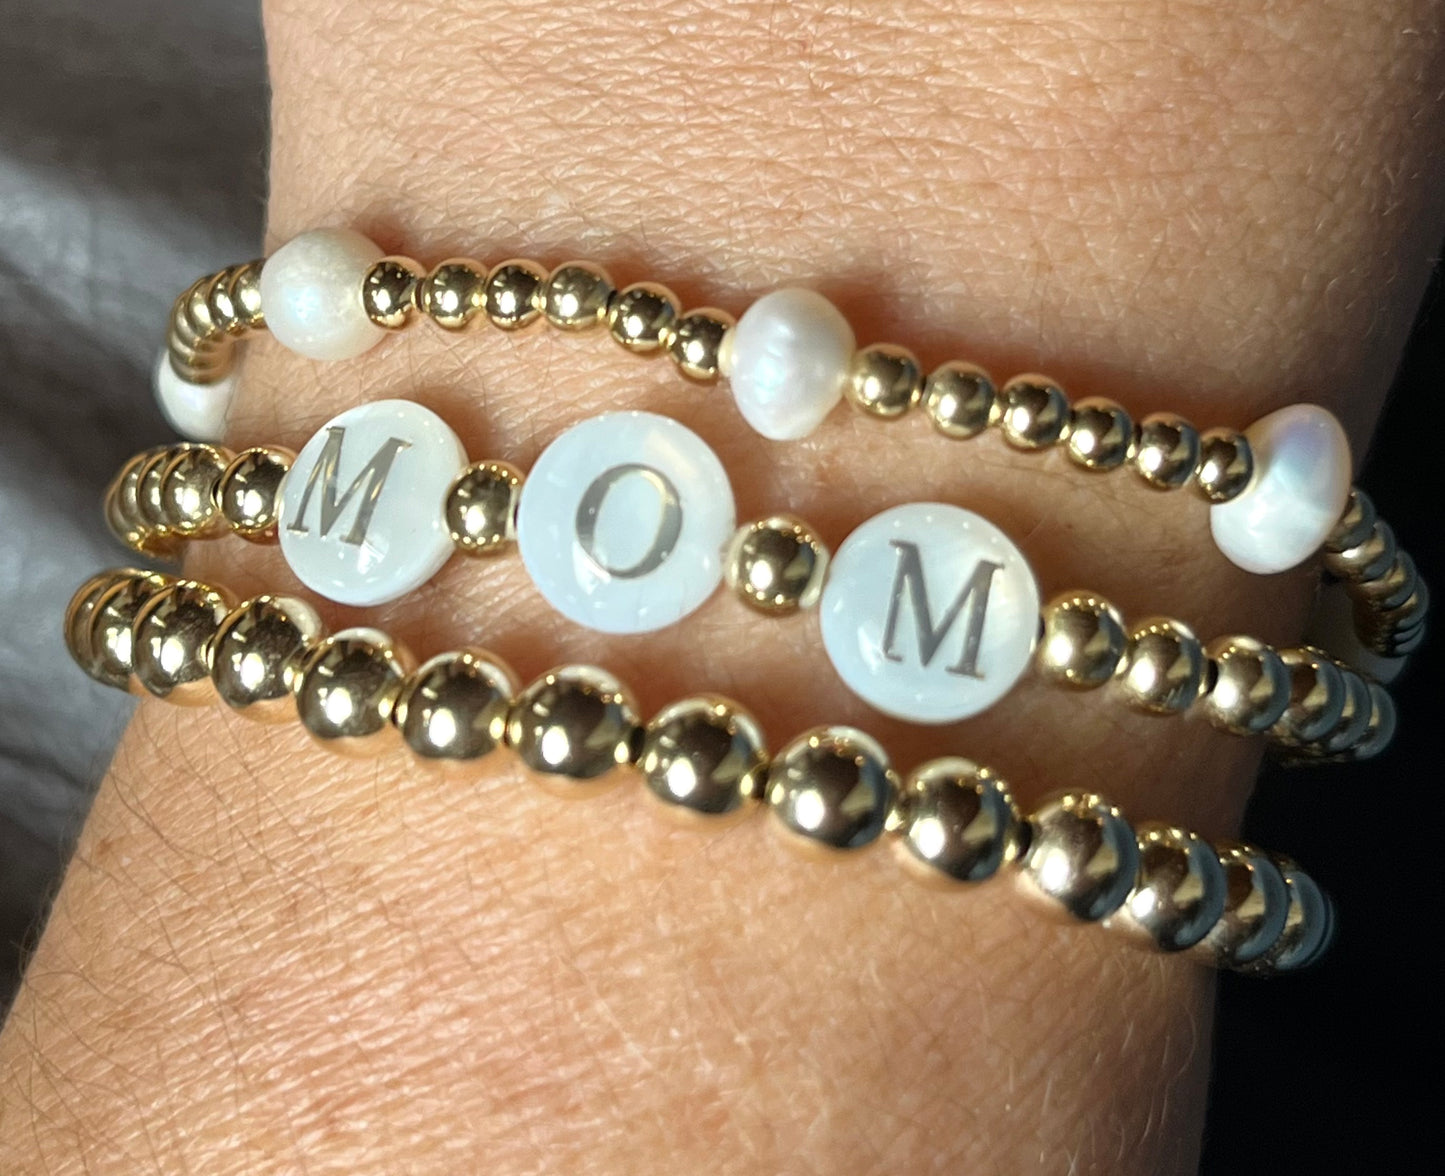 MOM - Letters & Gold Filled bracelet